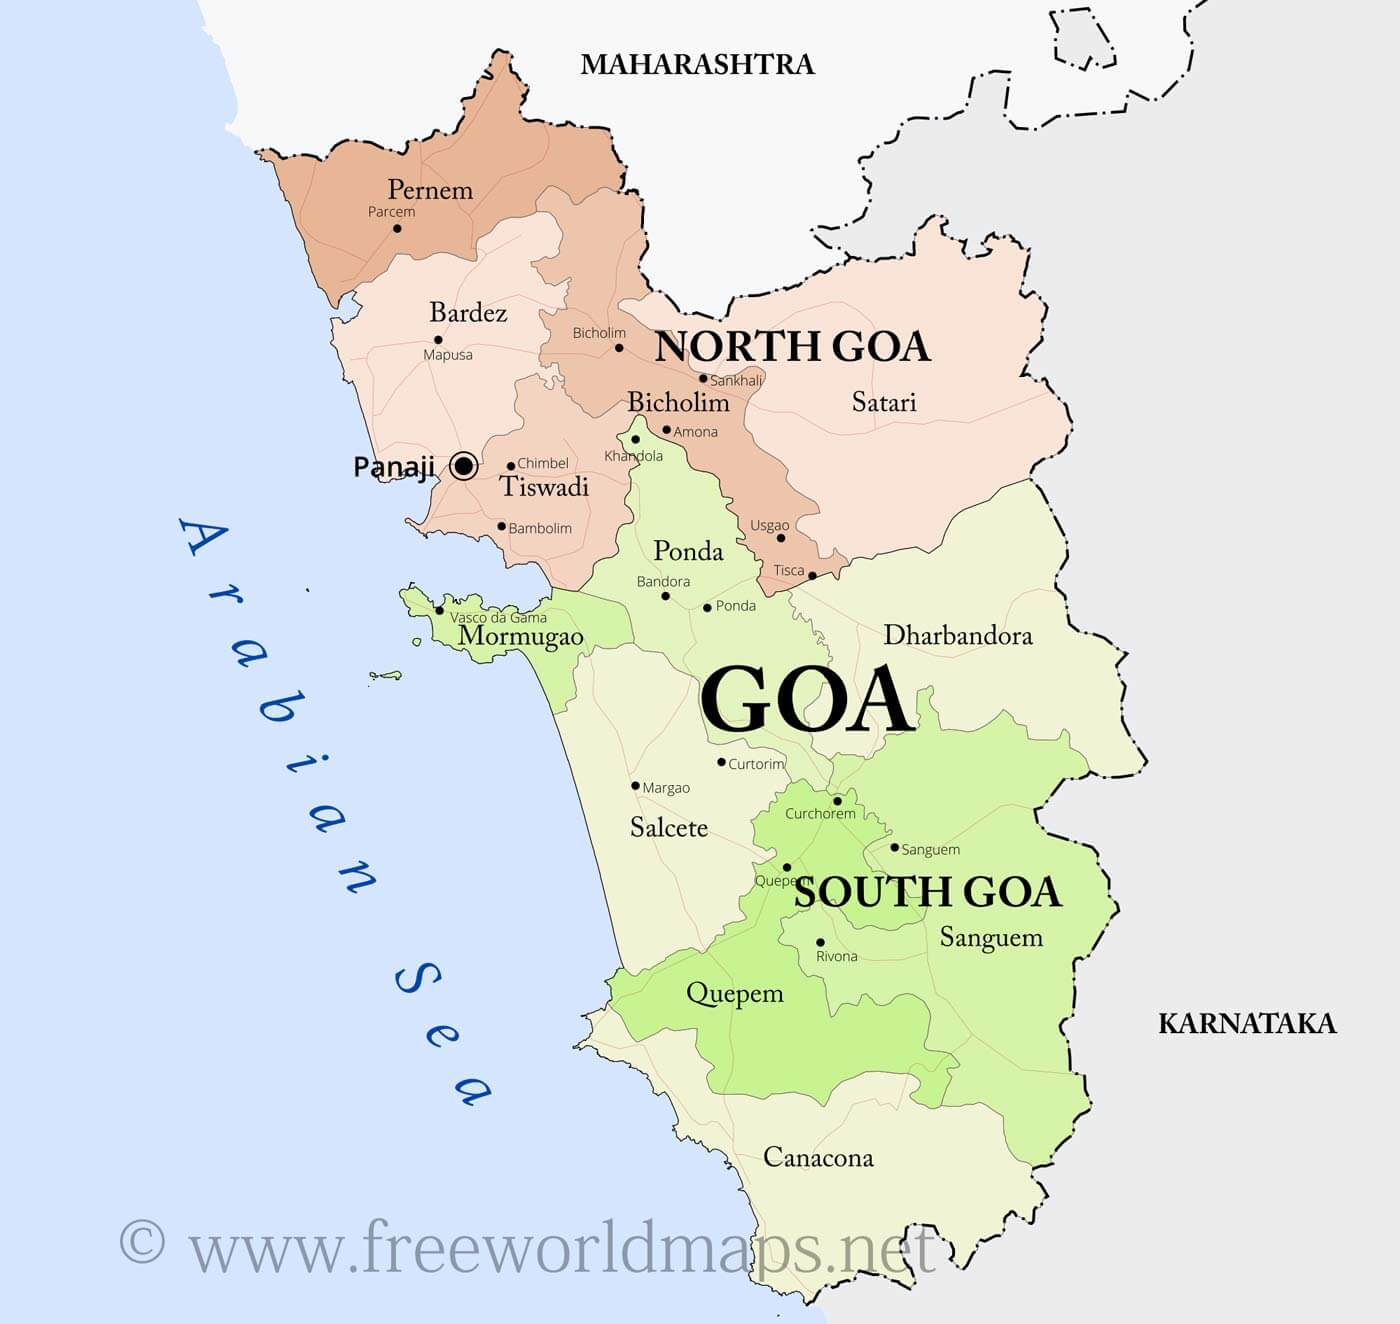 गोवा में सियासी संग्राम शुरू